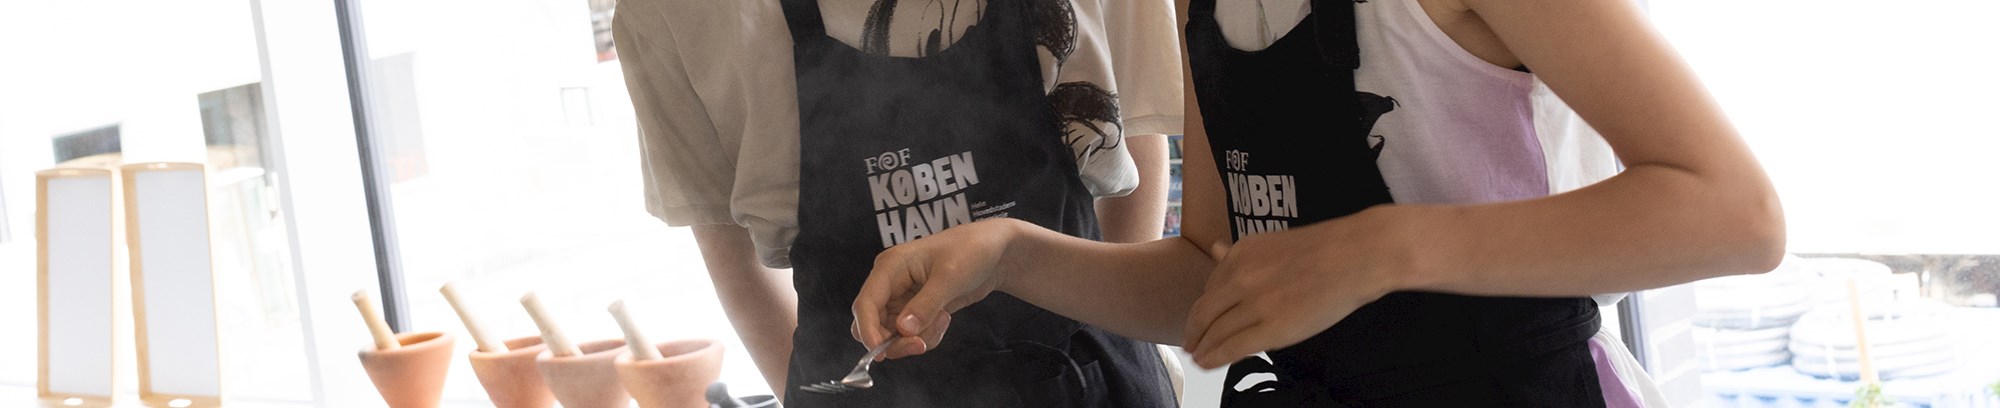 Gå på kokkeskole for børn og unge hos FOF København